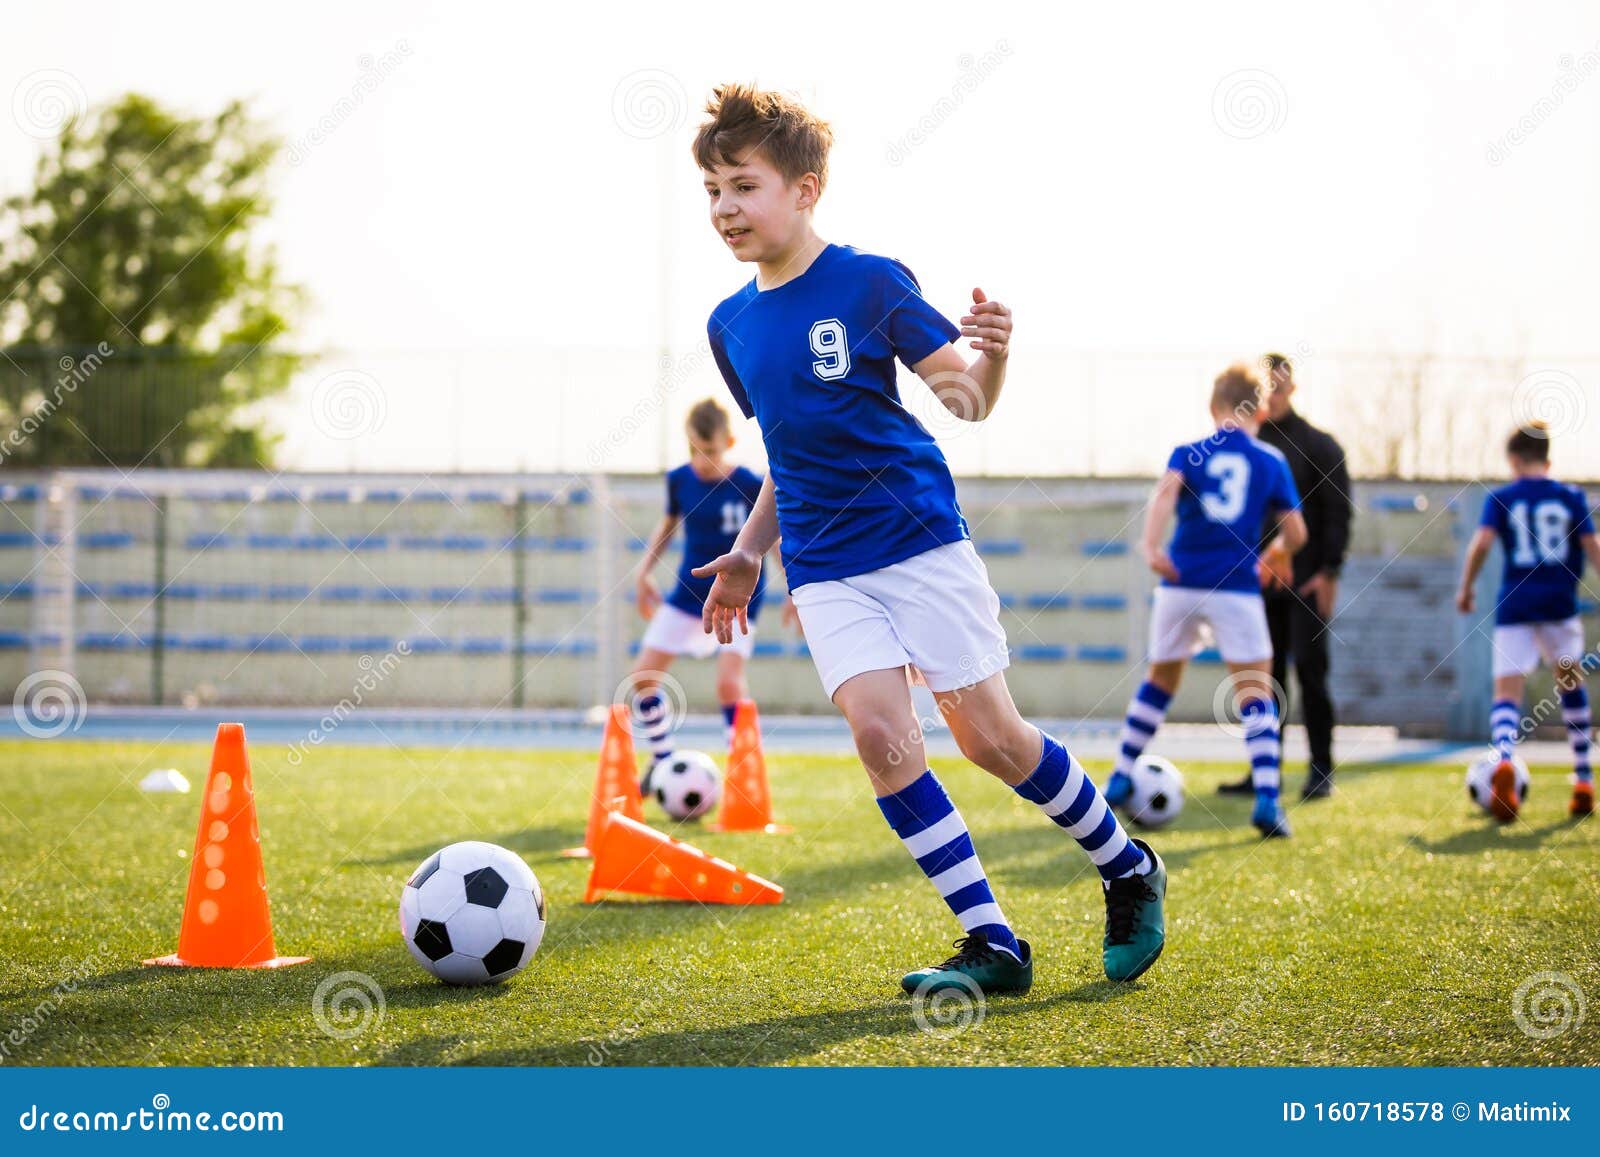 Kids Sports Teaching Children To Improve Soccer Skills